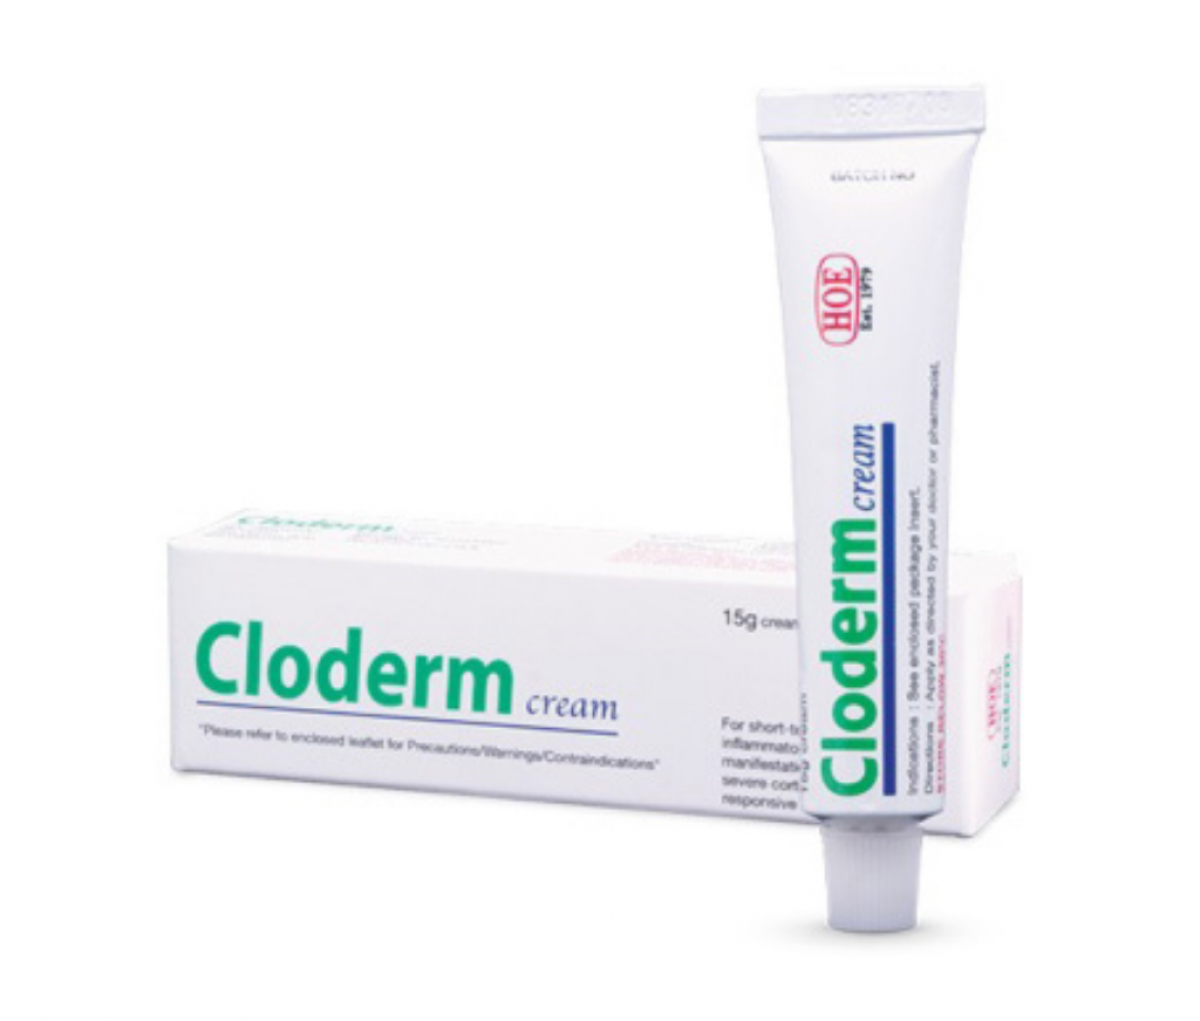 Cloderm Cream 15g